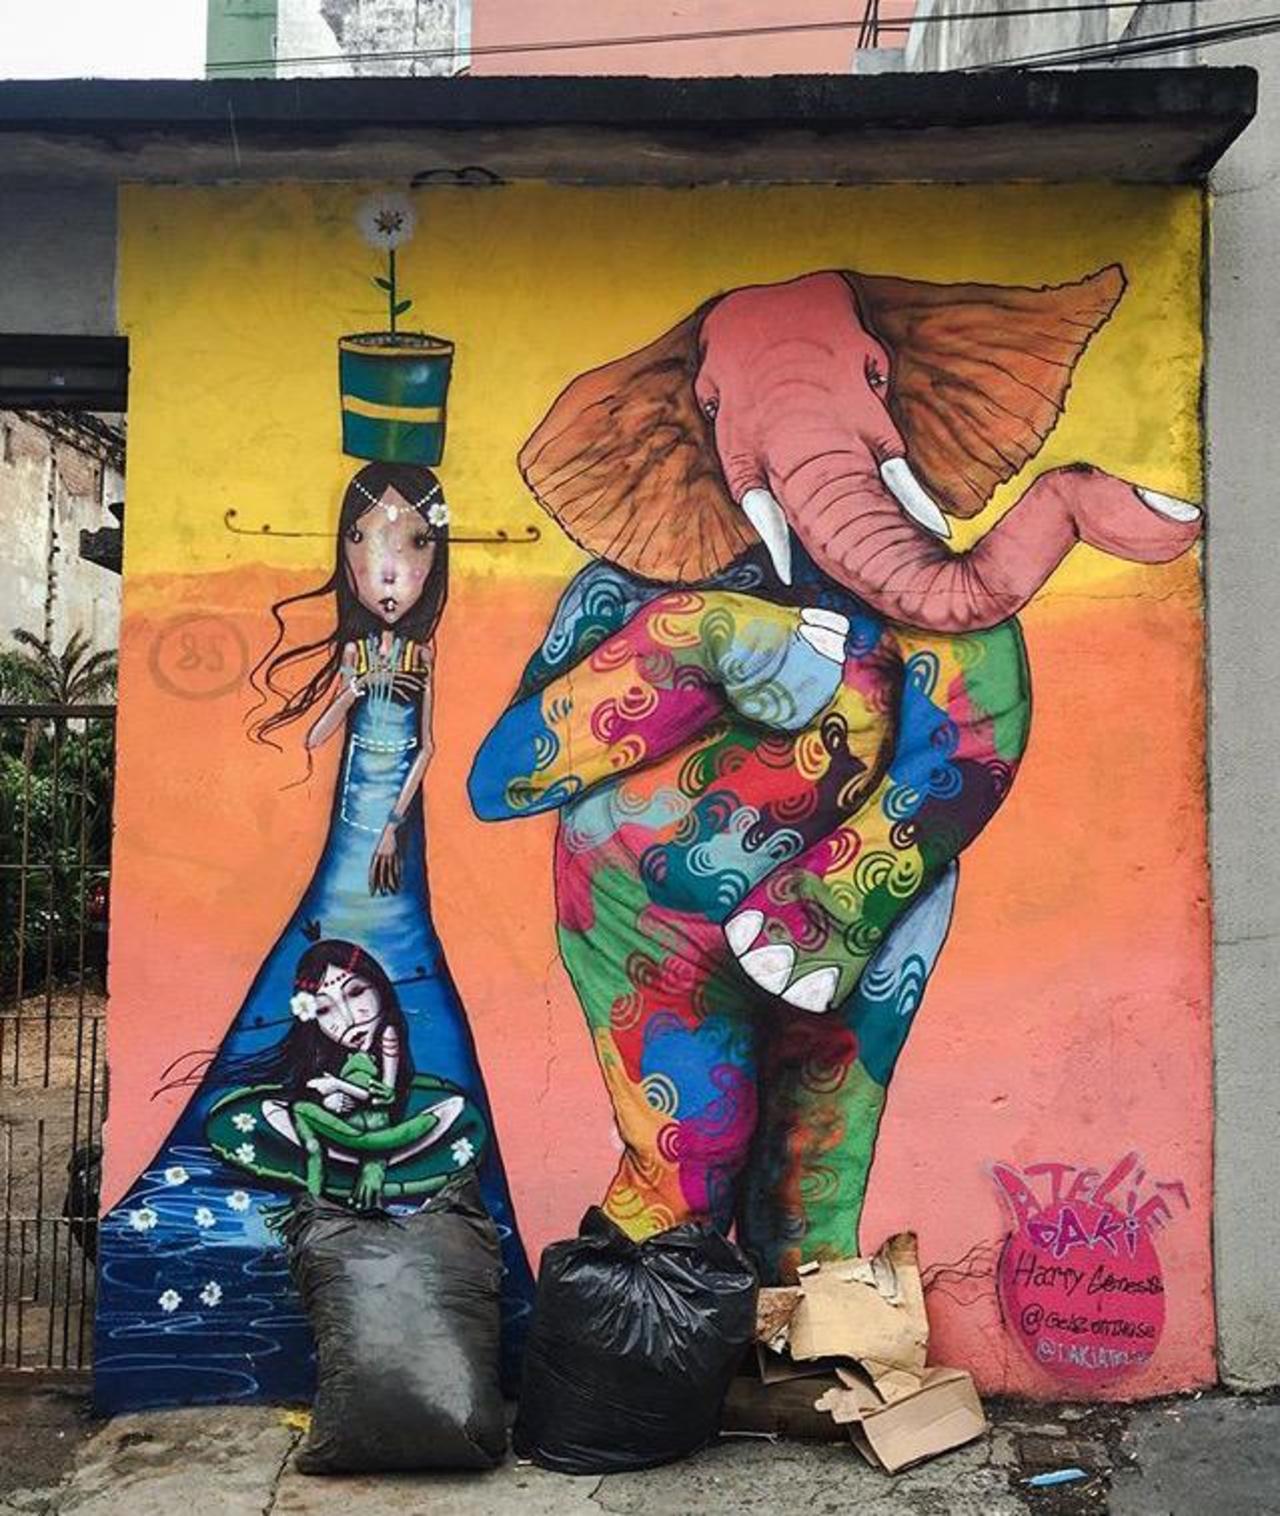 Street Art by Harry Geneis & Gelson in São Paulo 

#art #mural #graffiti #streetart http://t.co/XXBODG7iN1